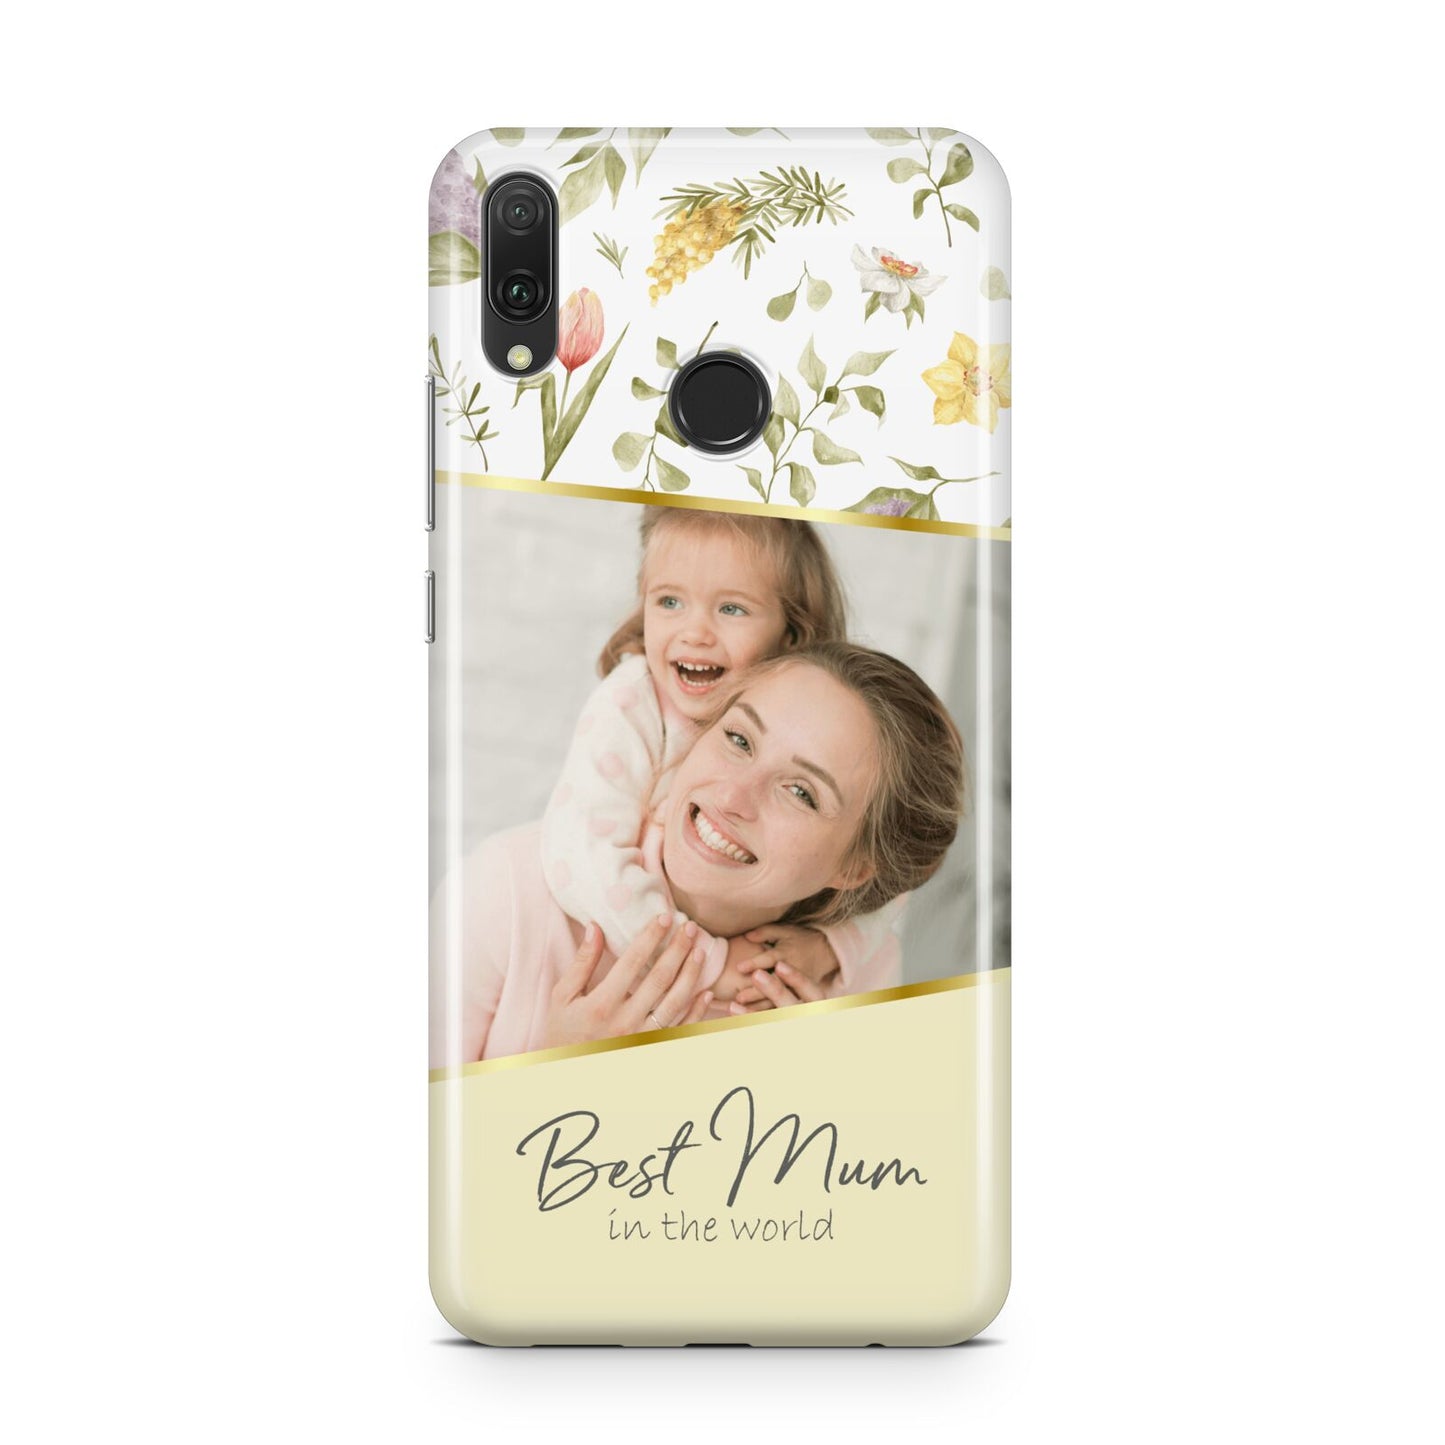 Personalised Best Mum Huawei Y9 2019